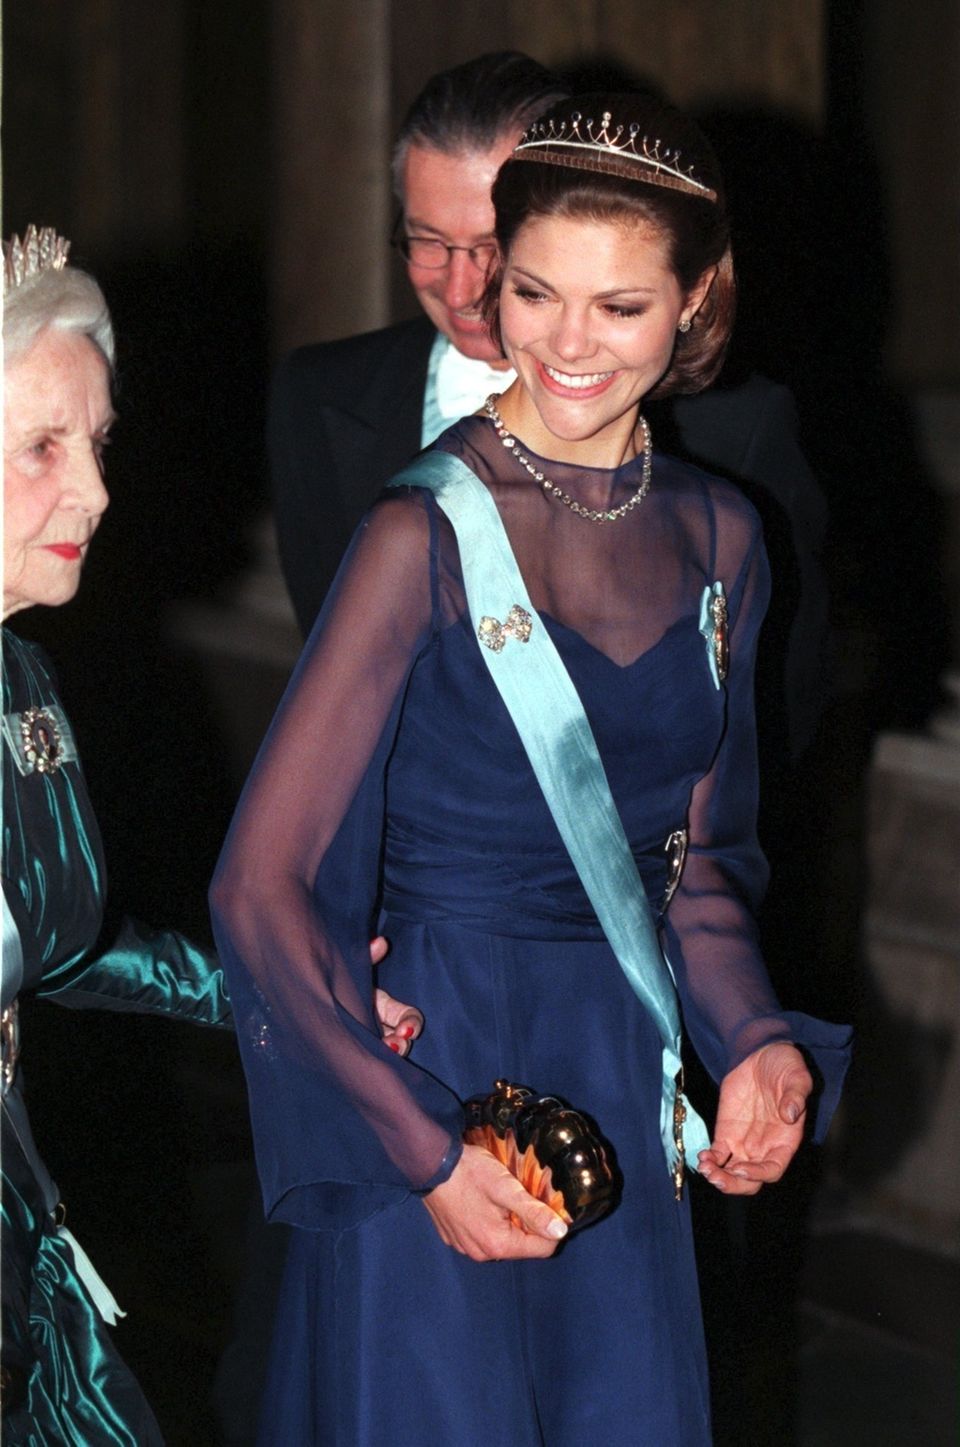 Prinzessin Victoria bei einer offiziellen Veranstaltung im Dezember 1997, kurz nach Bekanntgabe ihrer Essstörung.